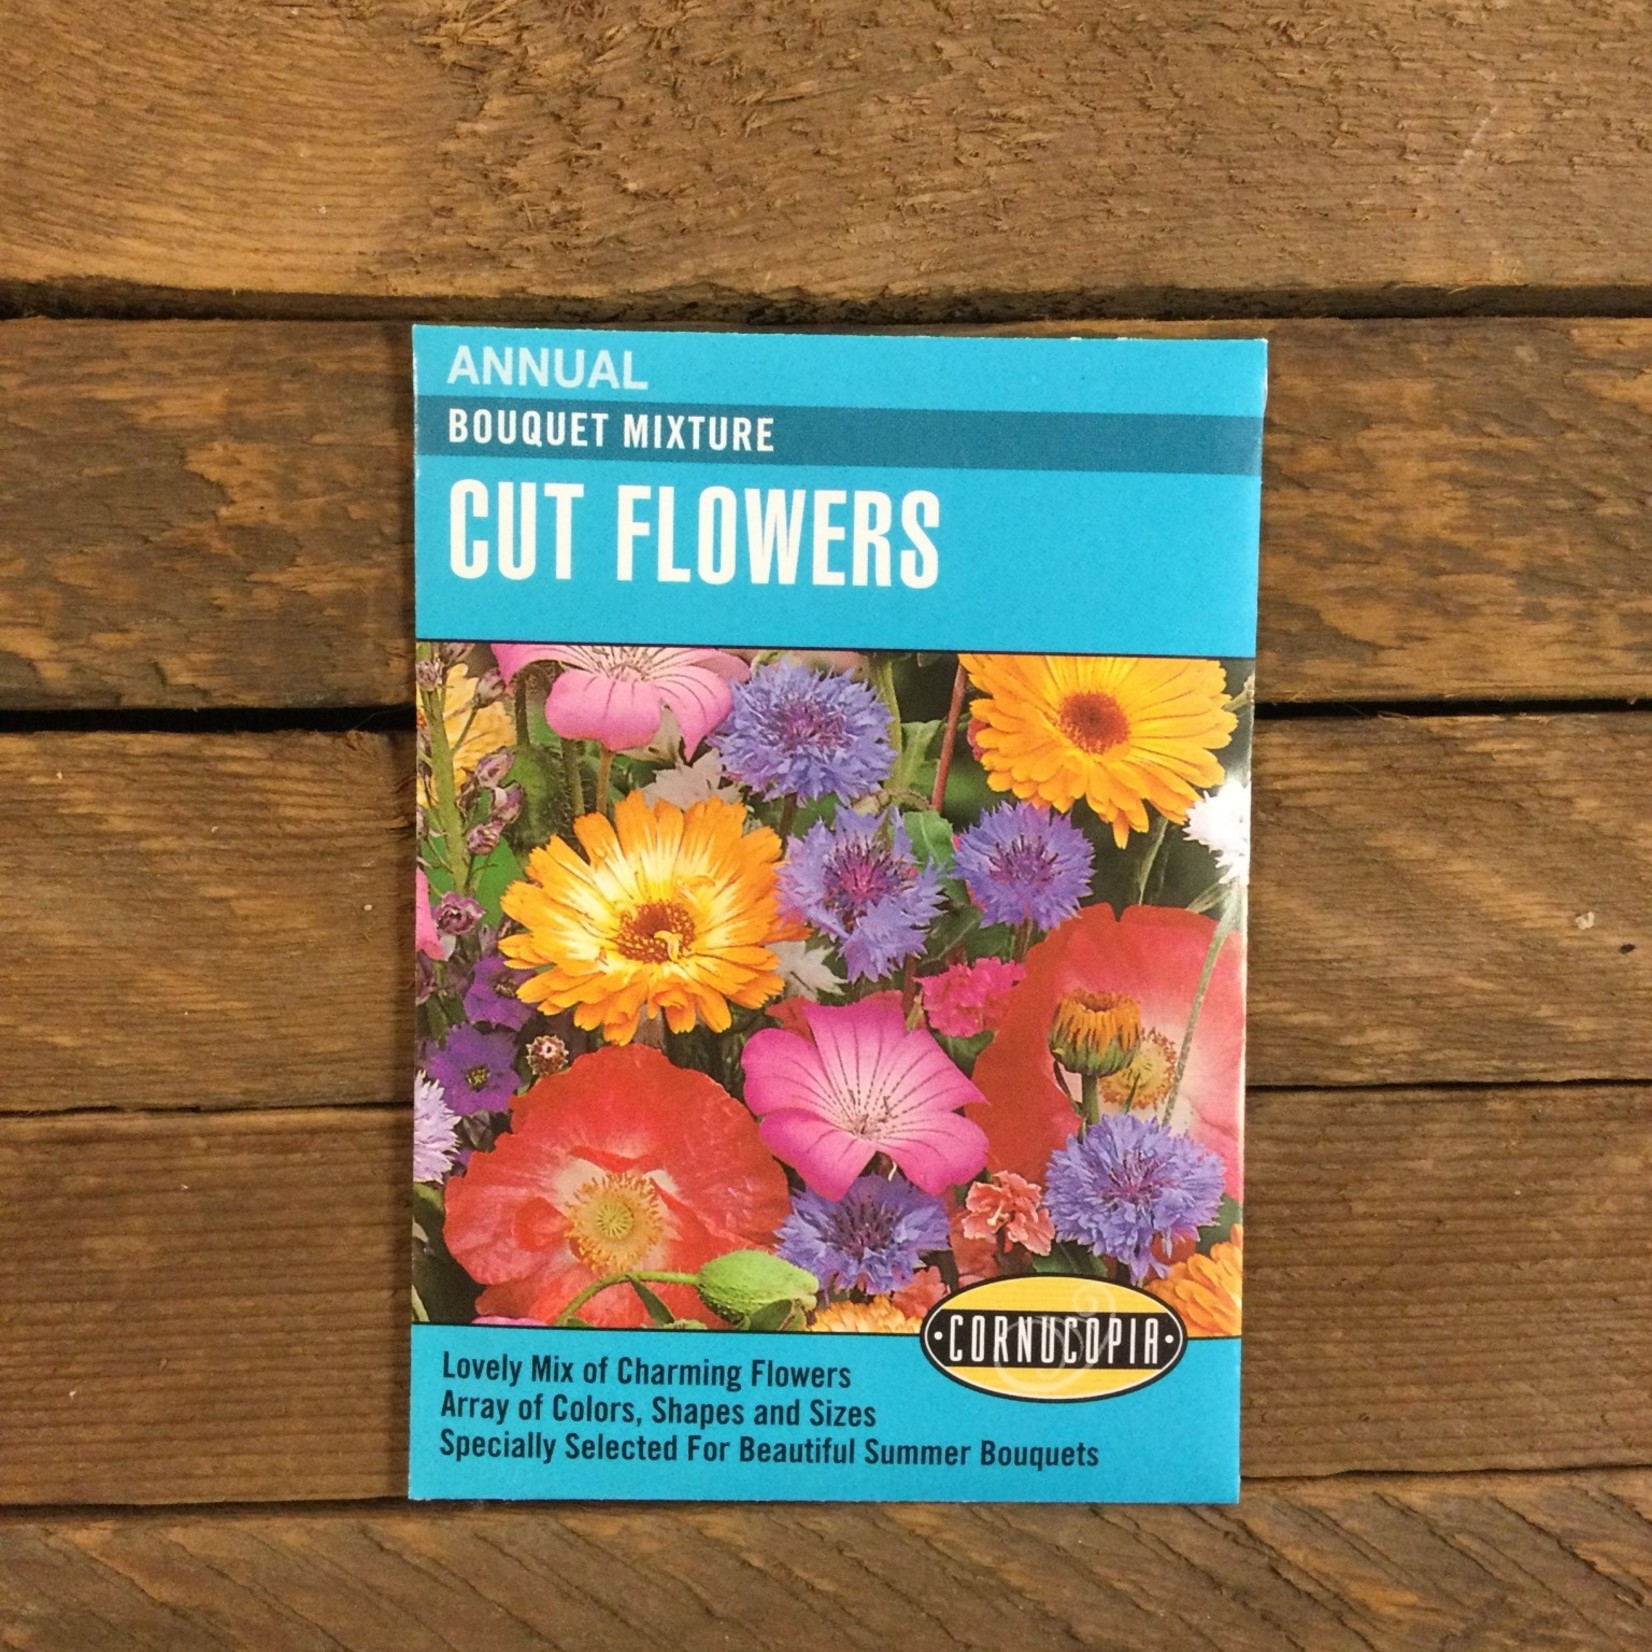 Cornucopia Flower Mix - Cut Flowers Bouquet Mixture